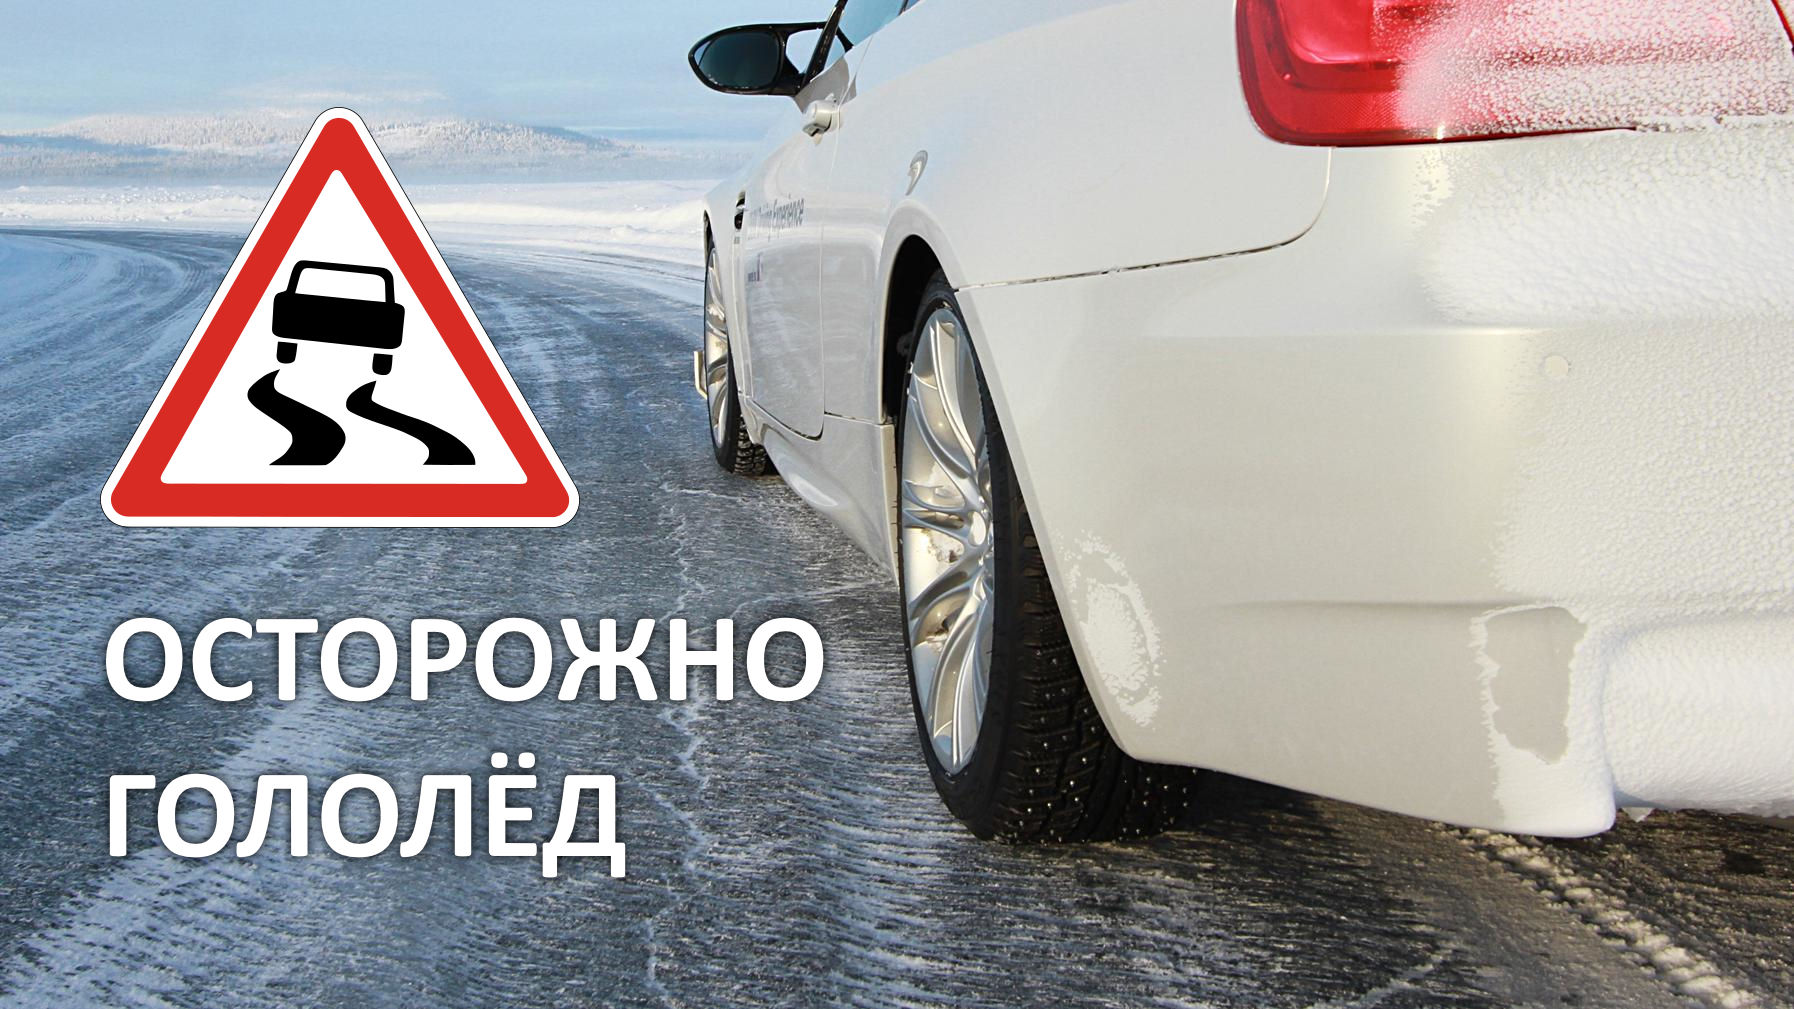 Госавтоинспекция г. Ирбита предупреждает водителей о сильном гололёде